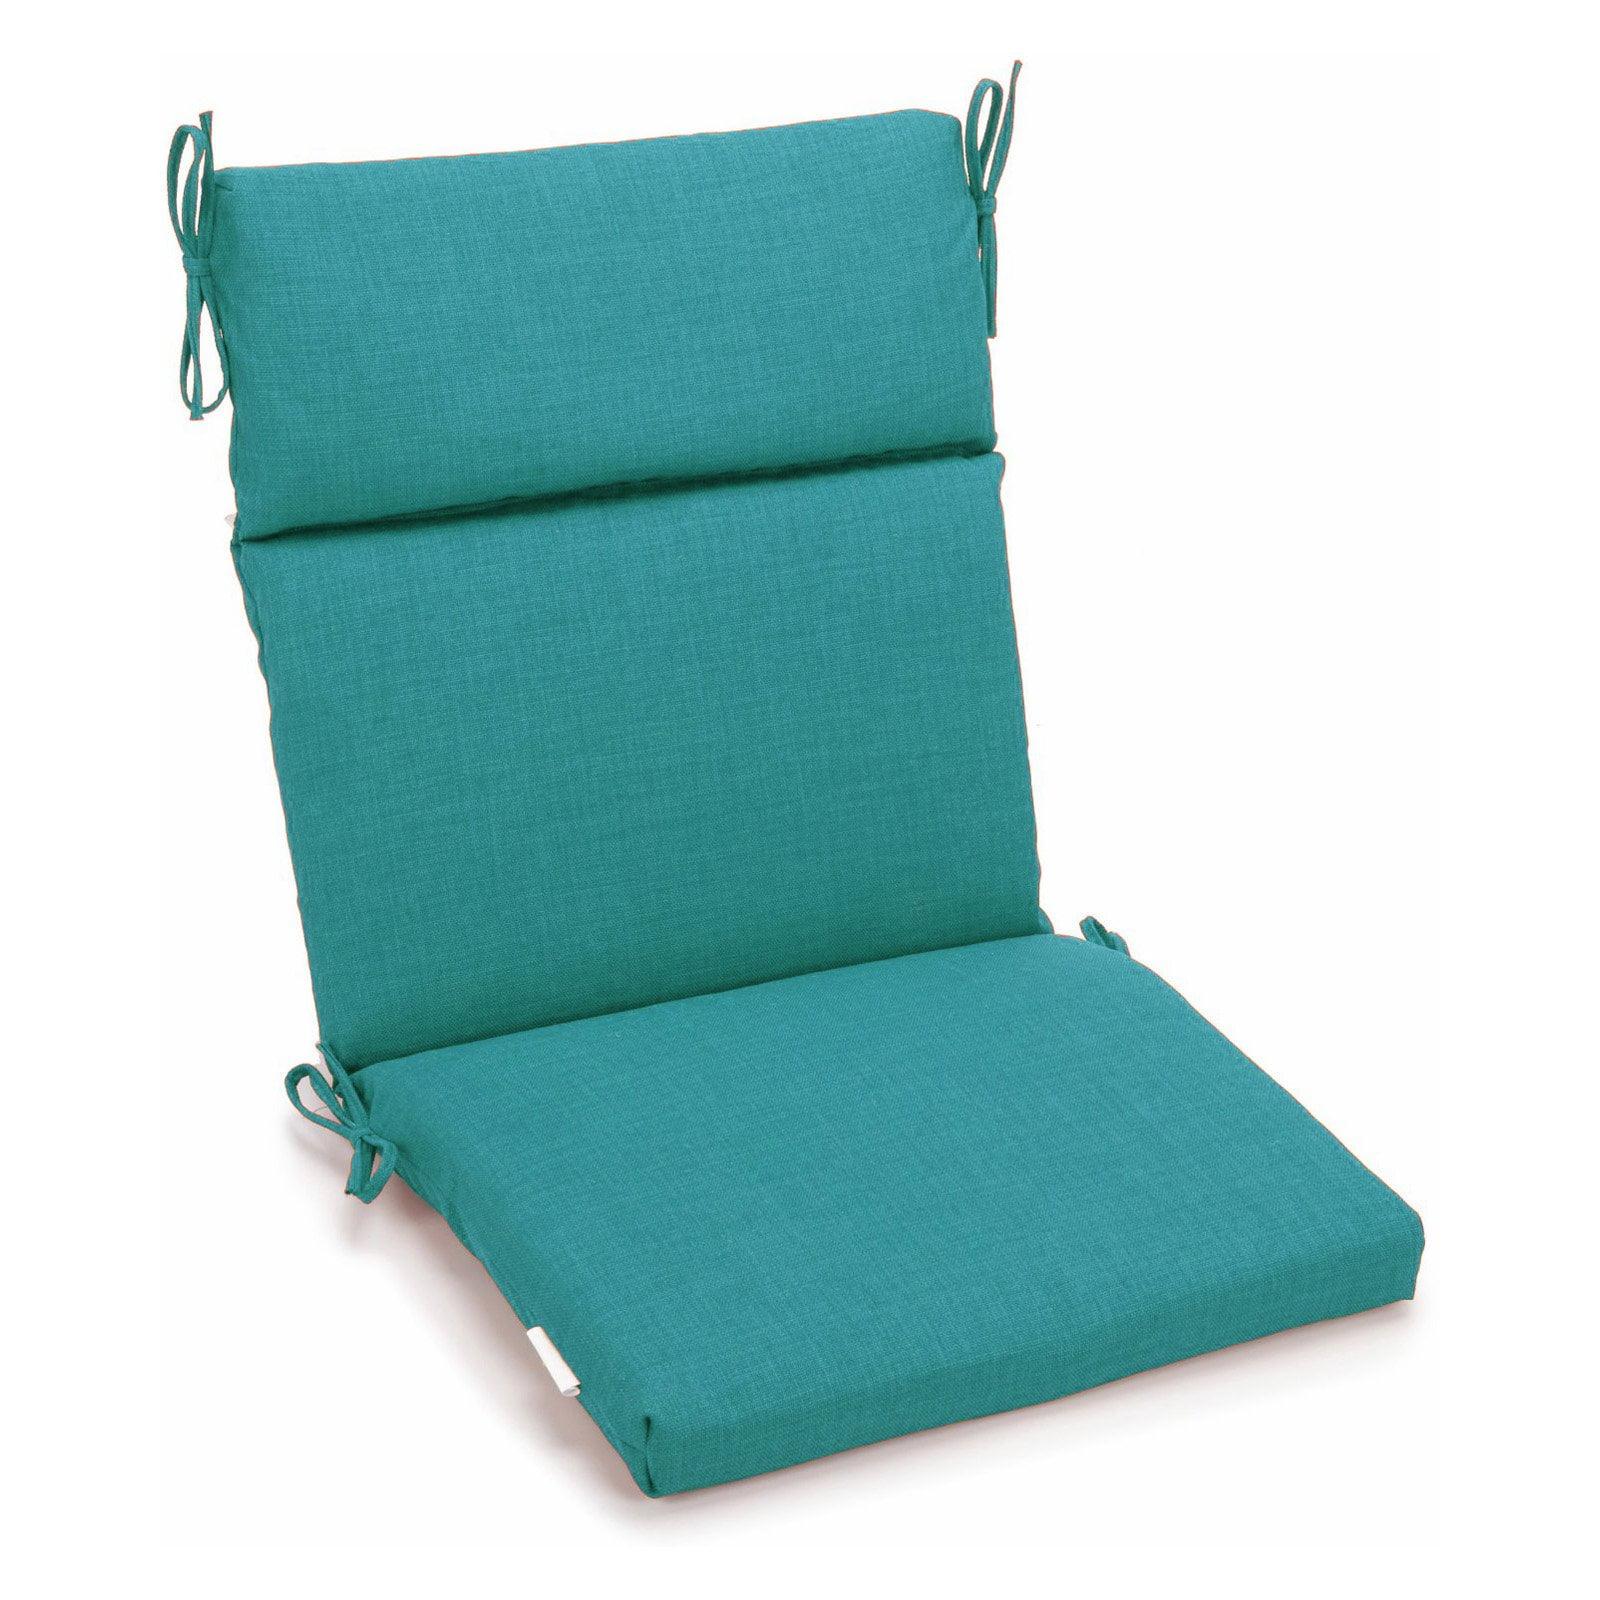 Aqua Blue Outdoor High Back Adirondack Chair Cushion